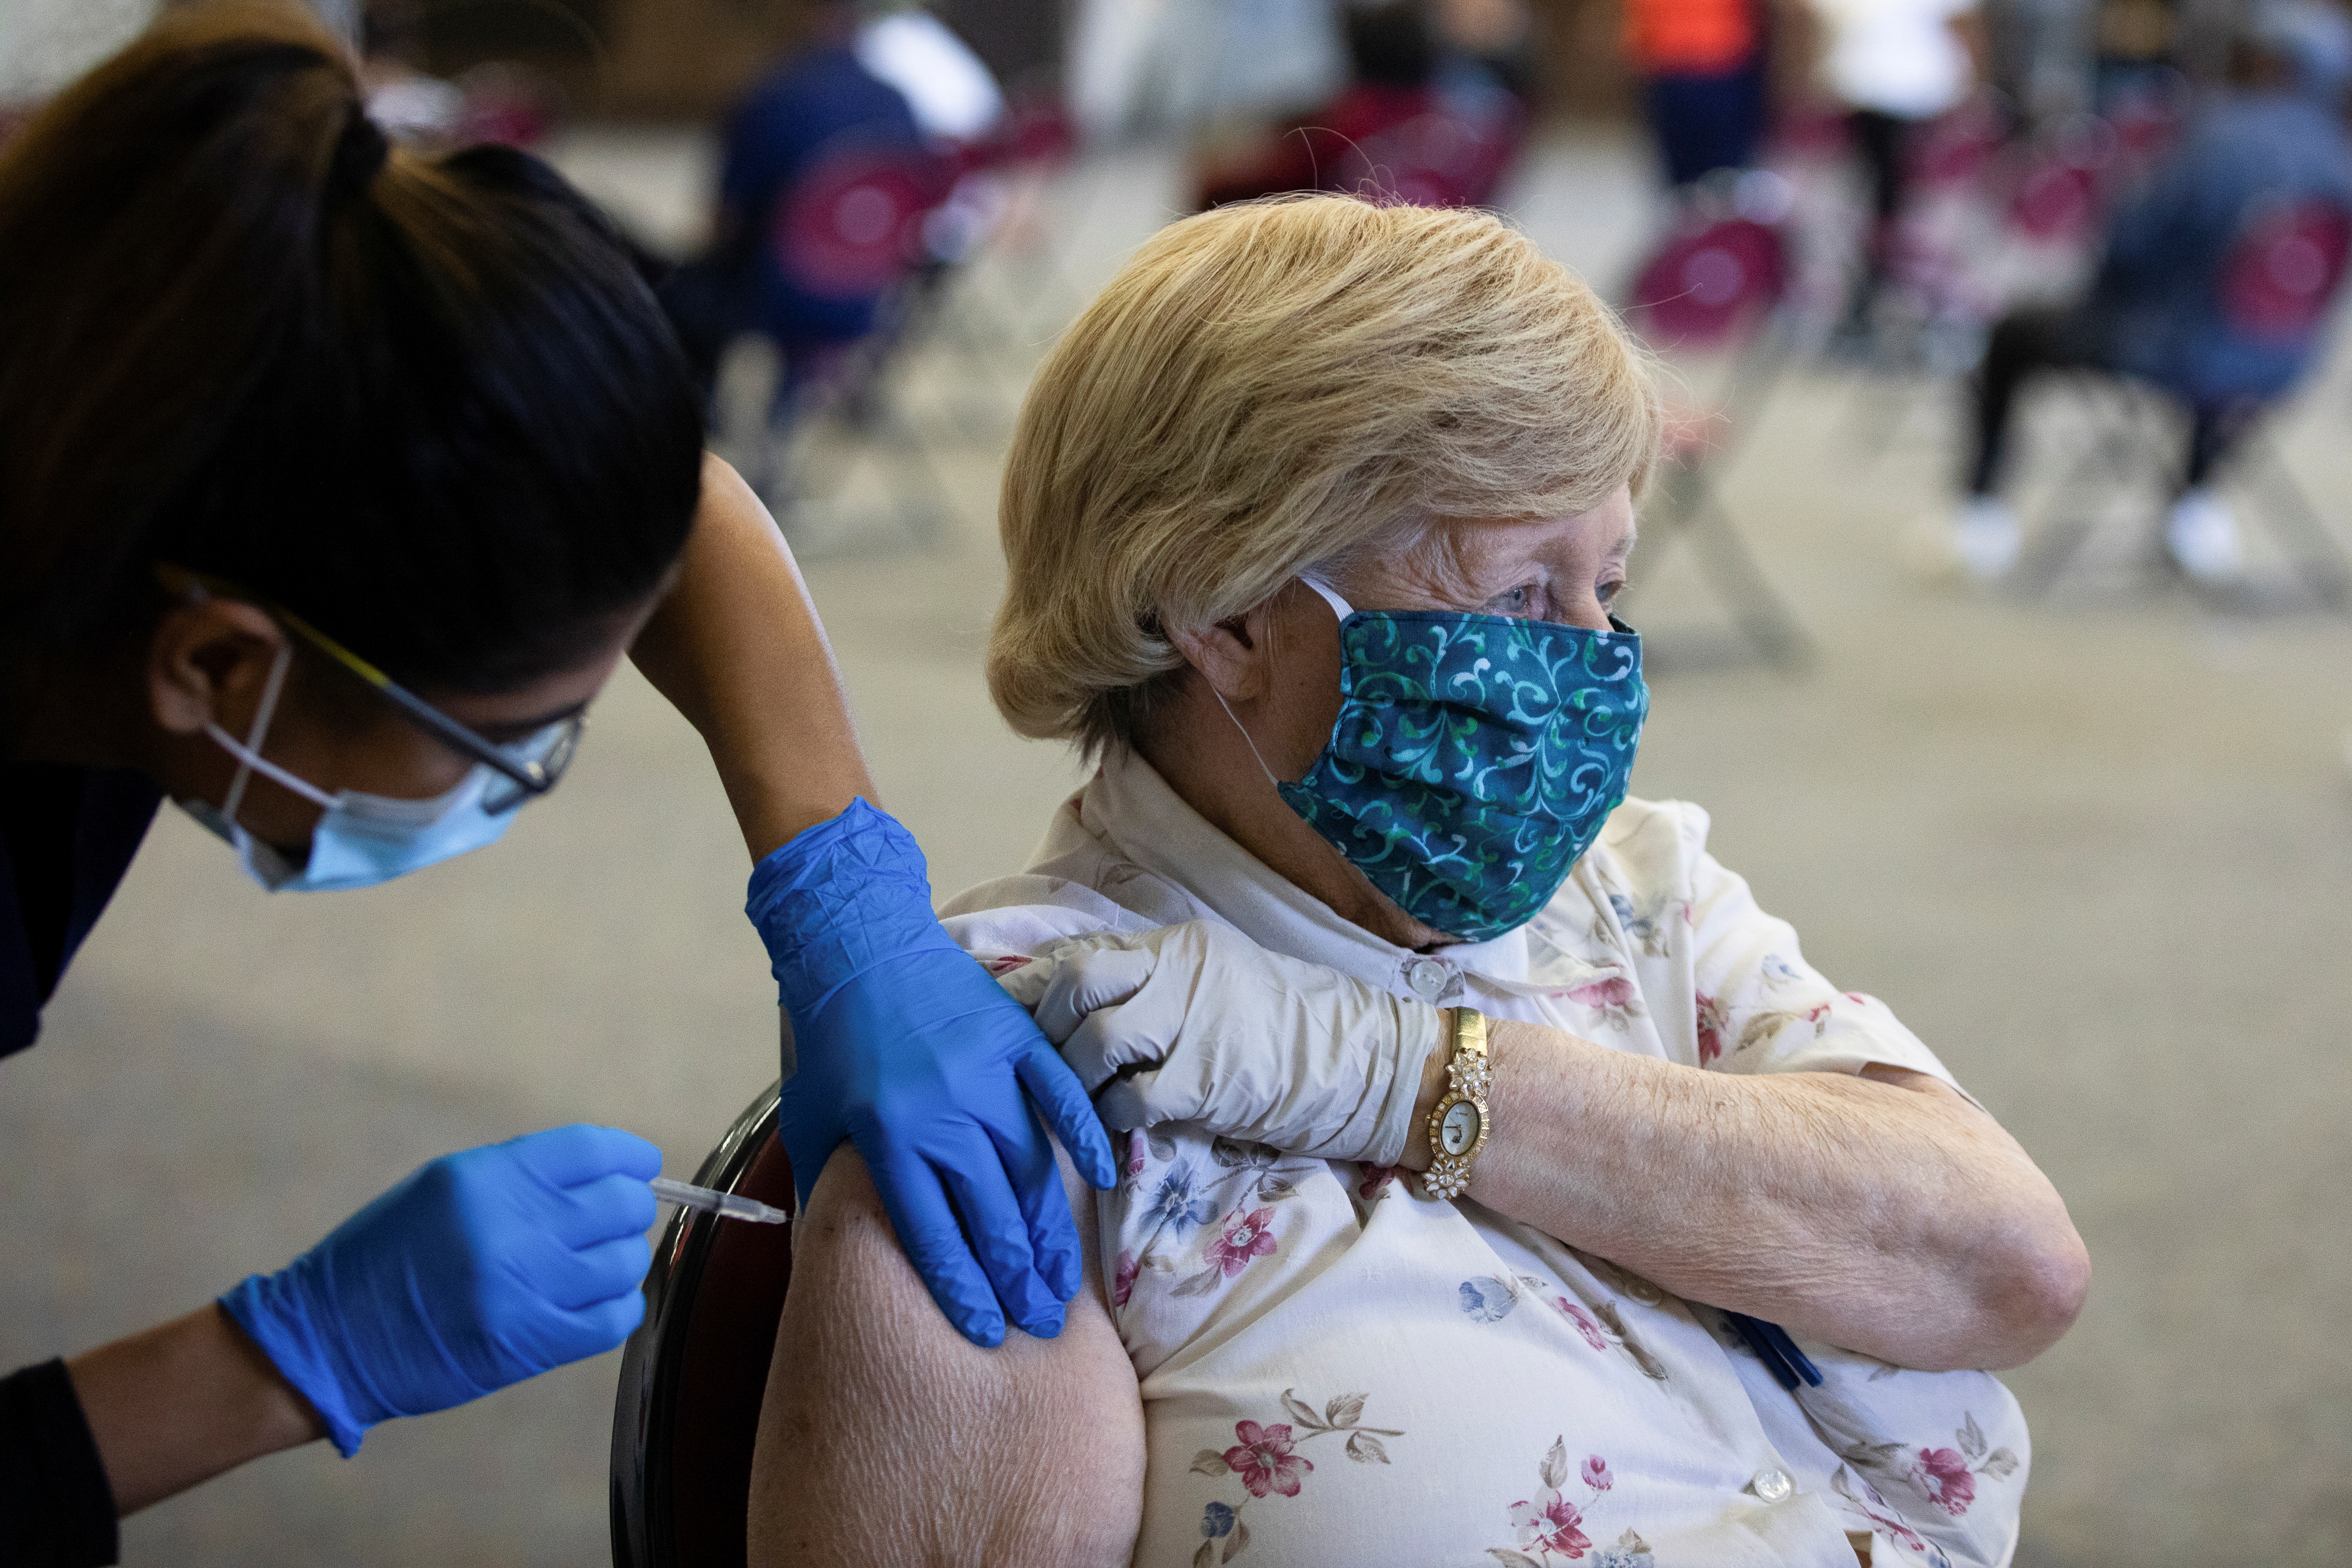 Una persona recibe su refuerzo de la vacuna contra la enfermedad del coronavirus (COVID-19) durante una clínica de vacunación de Pfizer-BioNTech en Southfield, Michigan, Estados Unidos, el 29 de septiembre de 2021. REUTERS/Emily Elconin